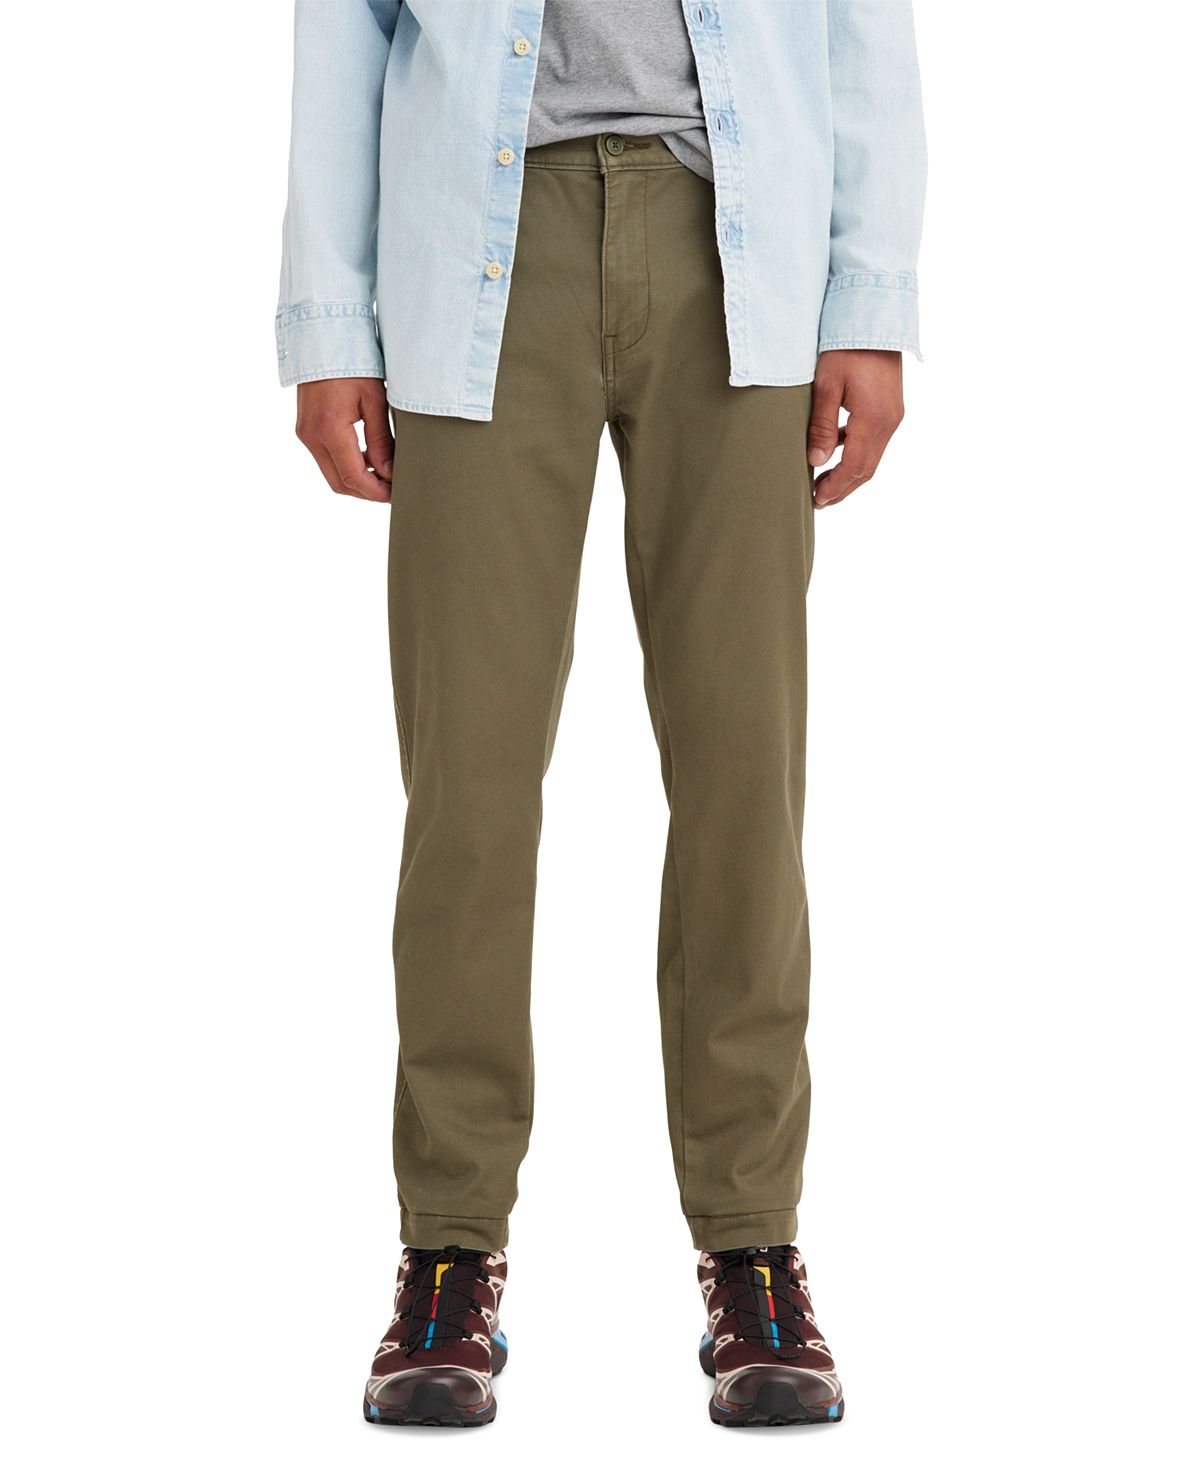 Мужские эластичные брюки xx chino standard с зауженным кроем Levi's, мульти школьные брюки чинос oshkosh повседневный стиль карманы размер 6 синий